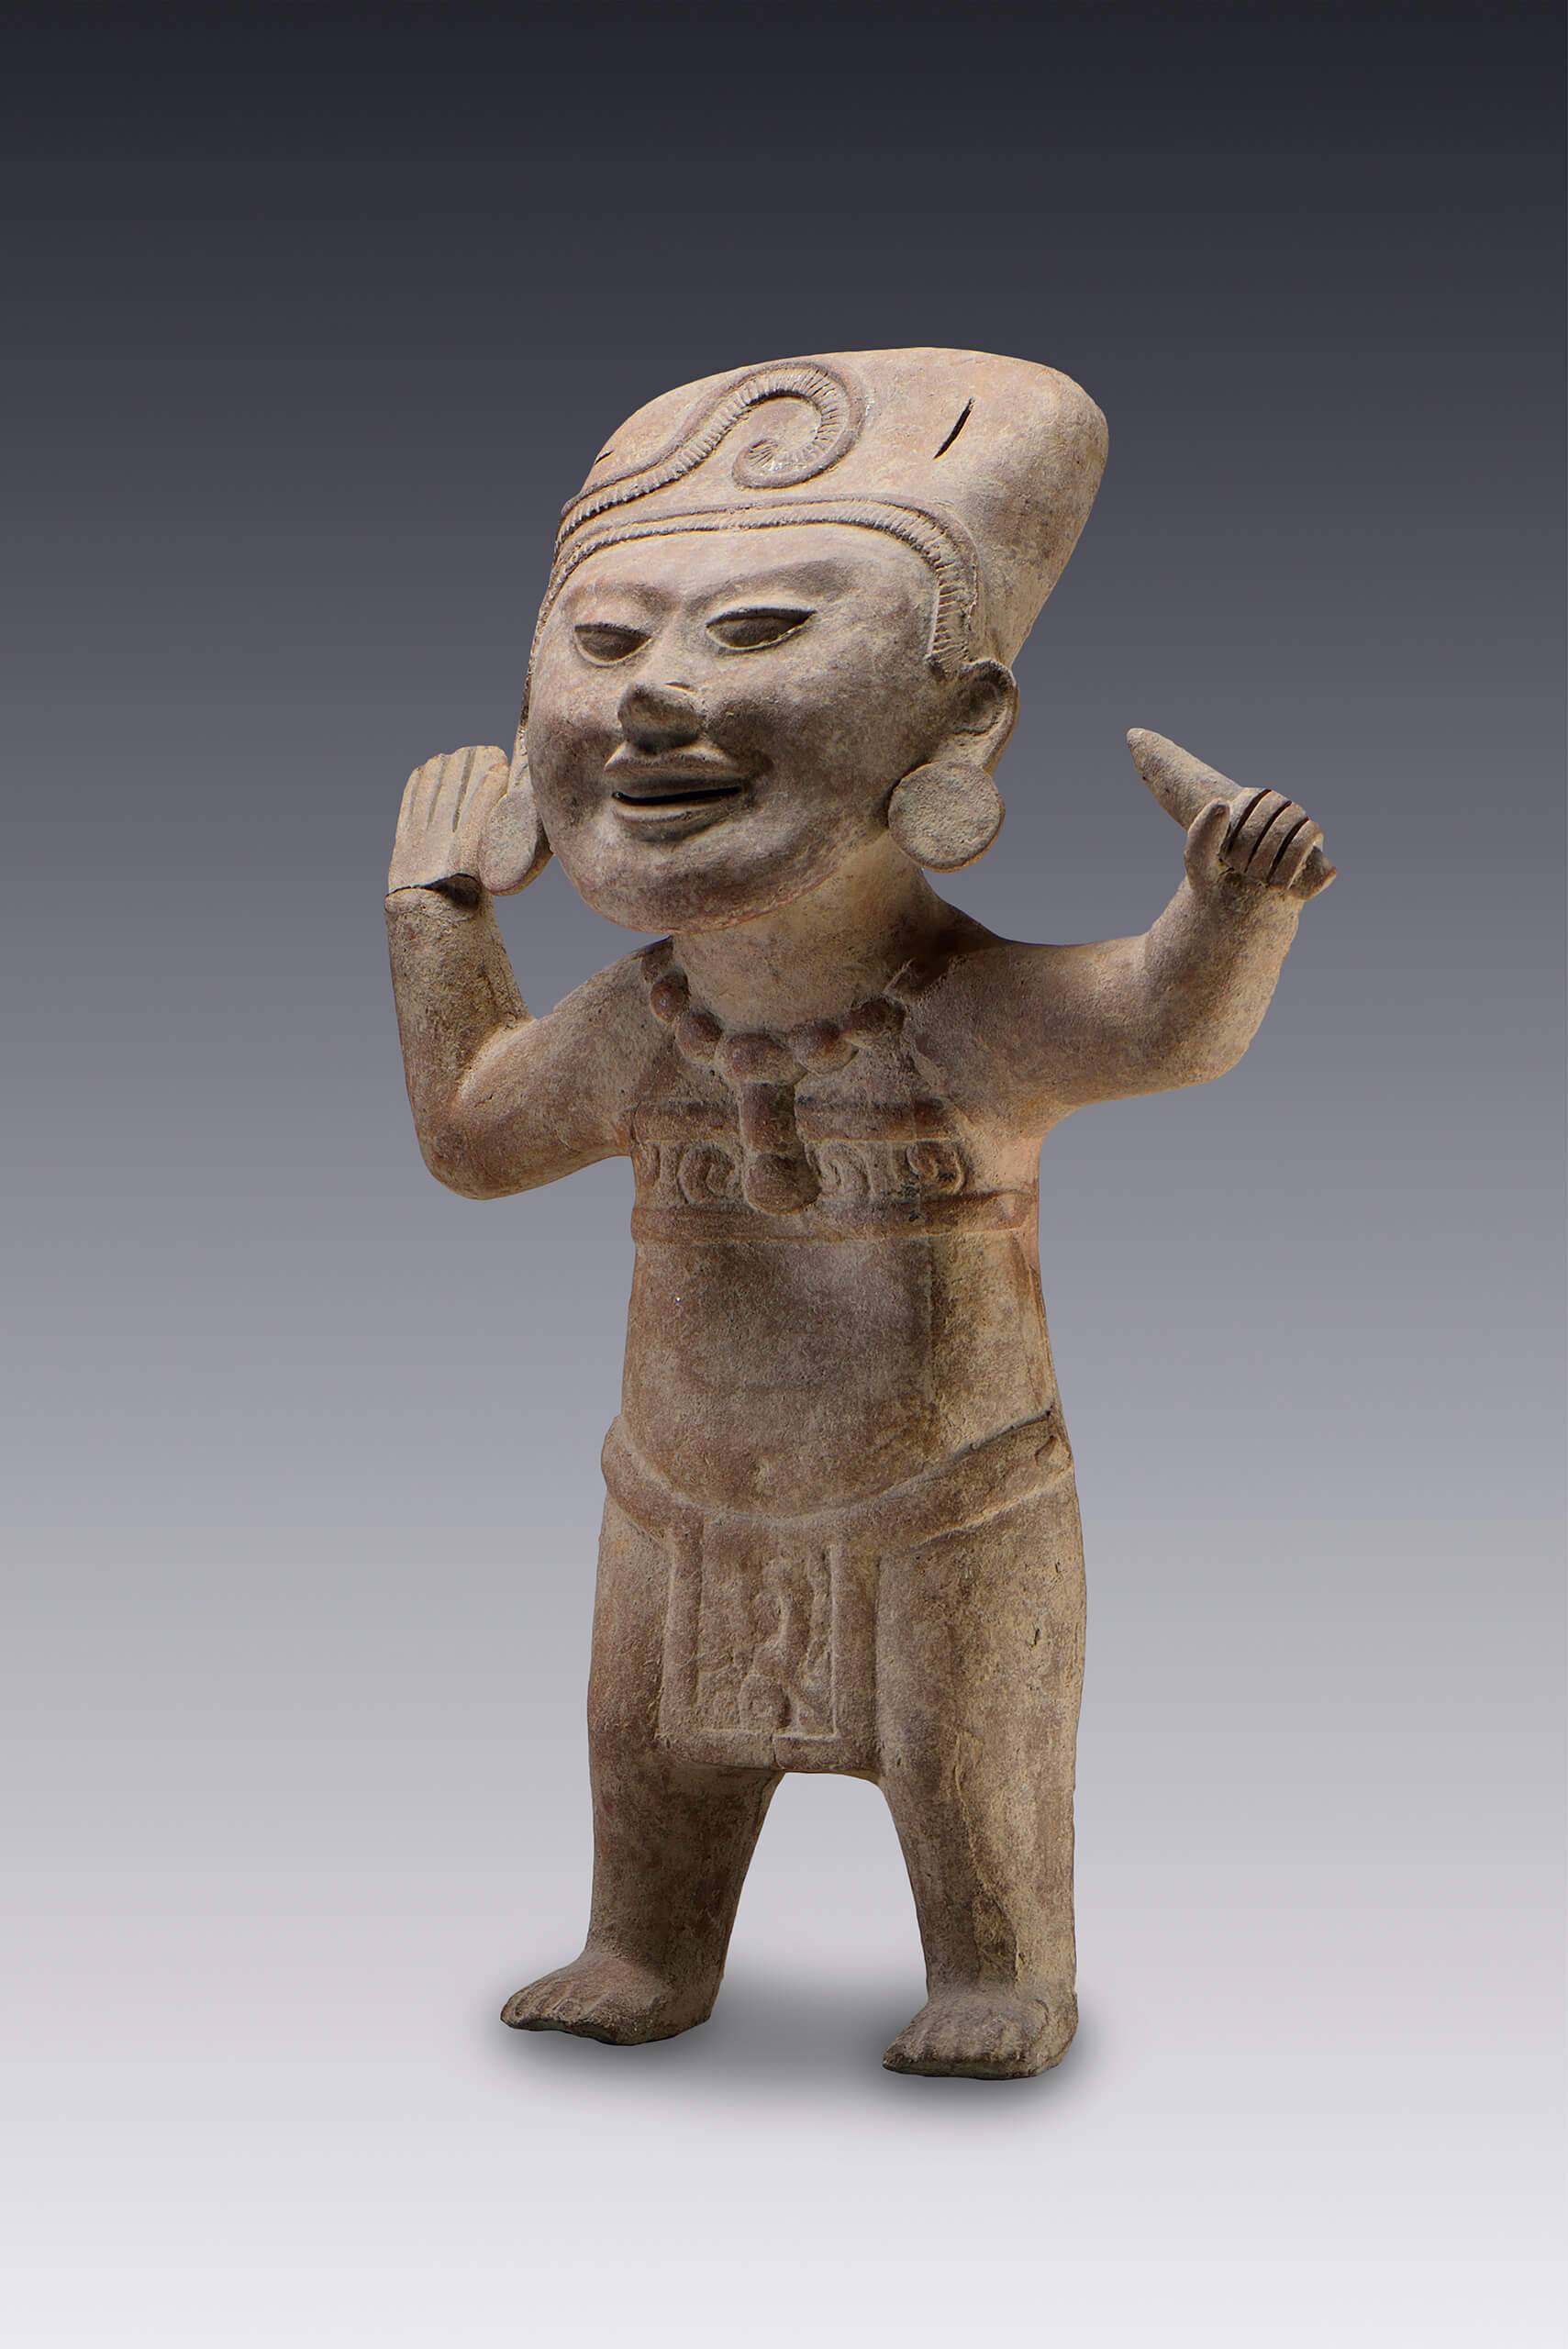 Figura de una persona que realiza ademanes de alegría | El México antiguo. Salas de Arte Prehispánico | Museo Amparo, Puebla